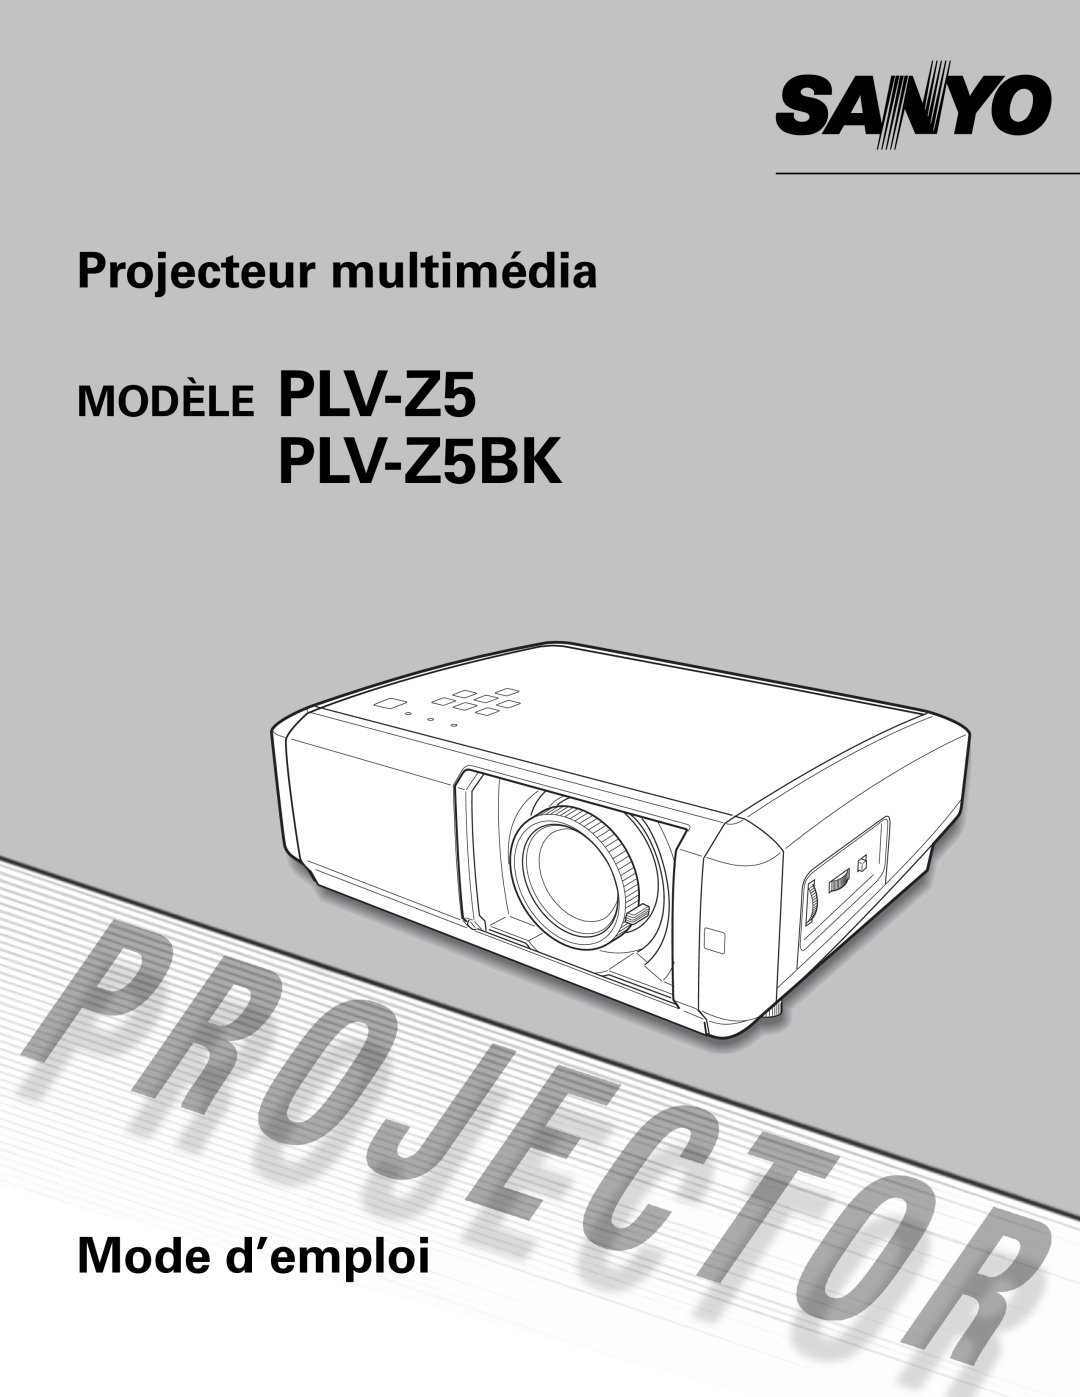 Sanyo PLV-Z5BK manual Projecteur multimédia, Mode d’emploi, MODÈLE PLV-Z5 